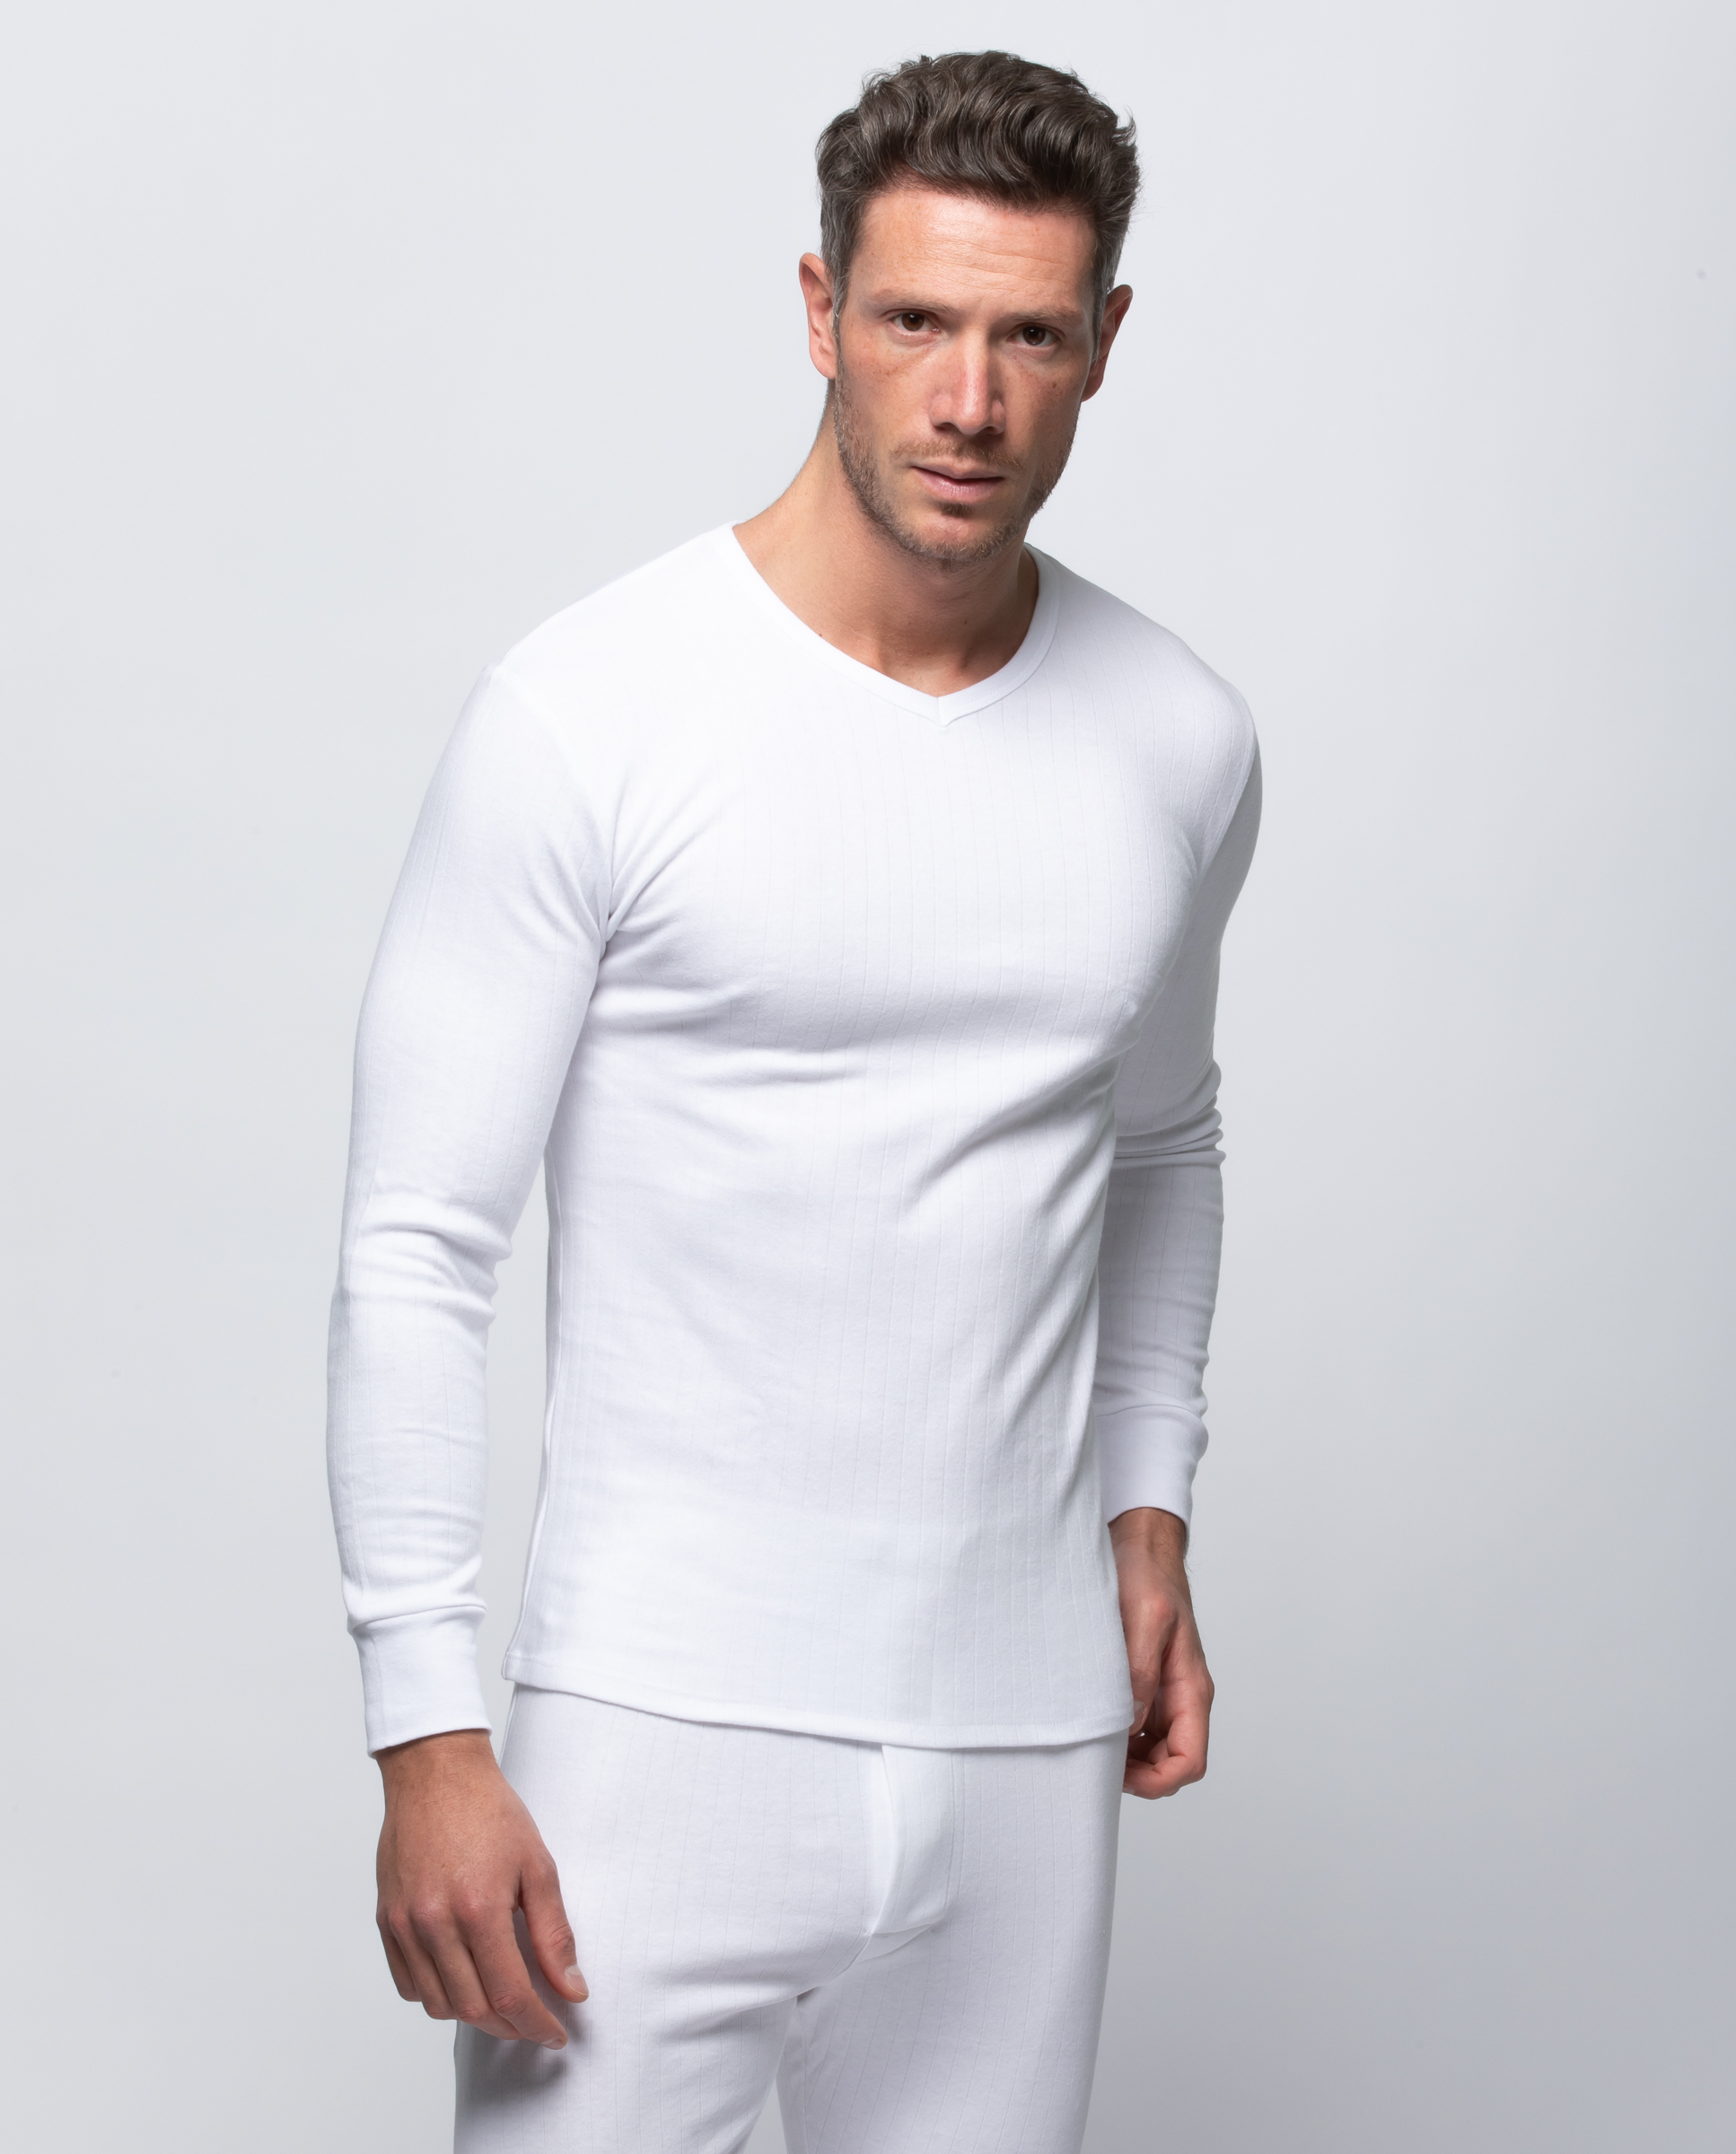 Camiseta interior de hombre en color blanco de manga corta · Abanderado ·  El Corte Inglés